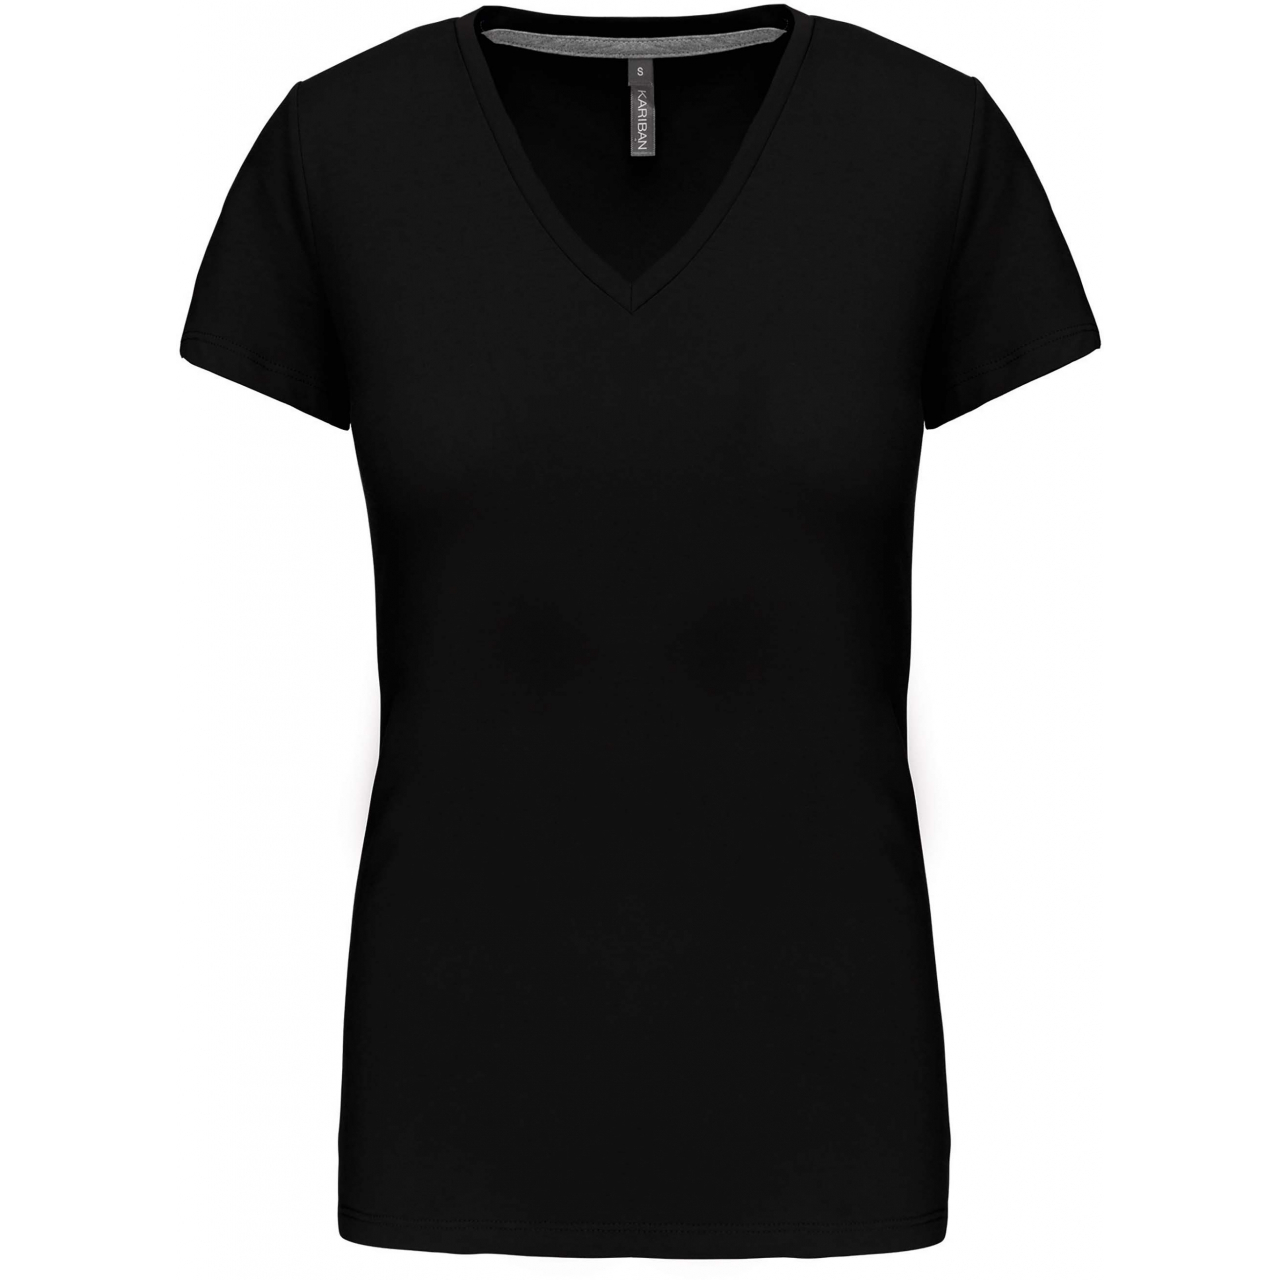 Dámské tričko Kariban V-neck s krátkým rukávem - černé, XL